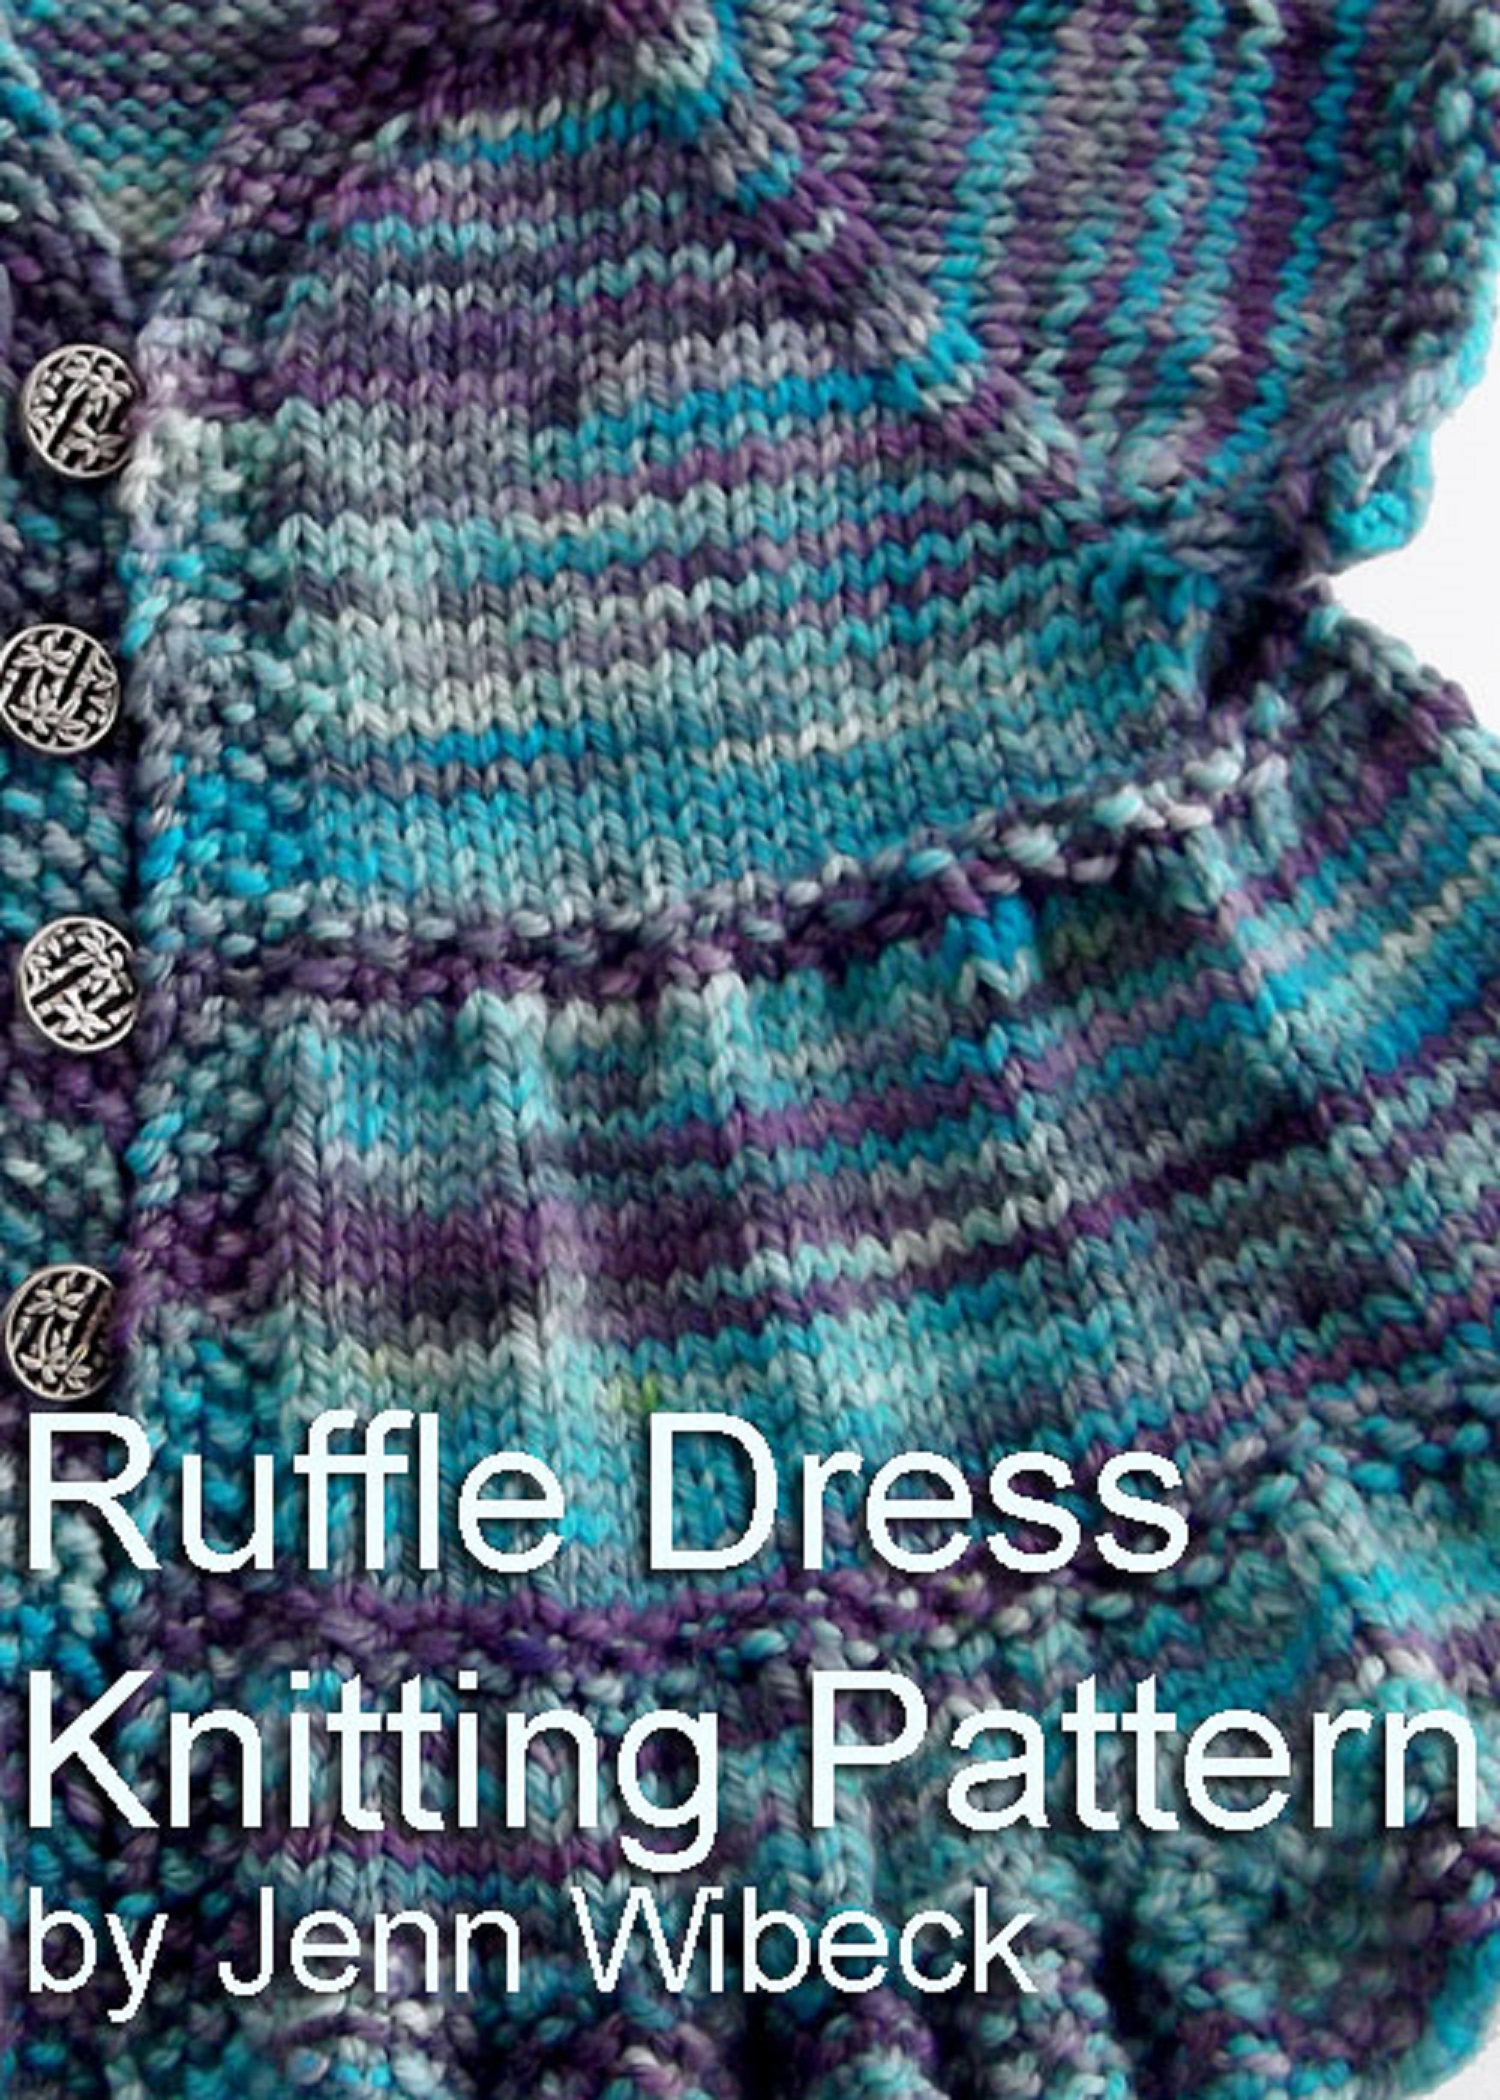 Ruffle Dress Baby Knitting Pattern An Ebook By Jenn Wisbeck